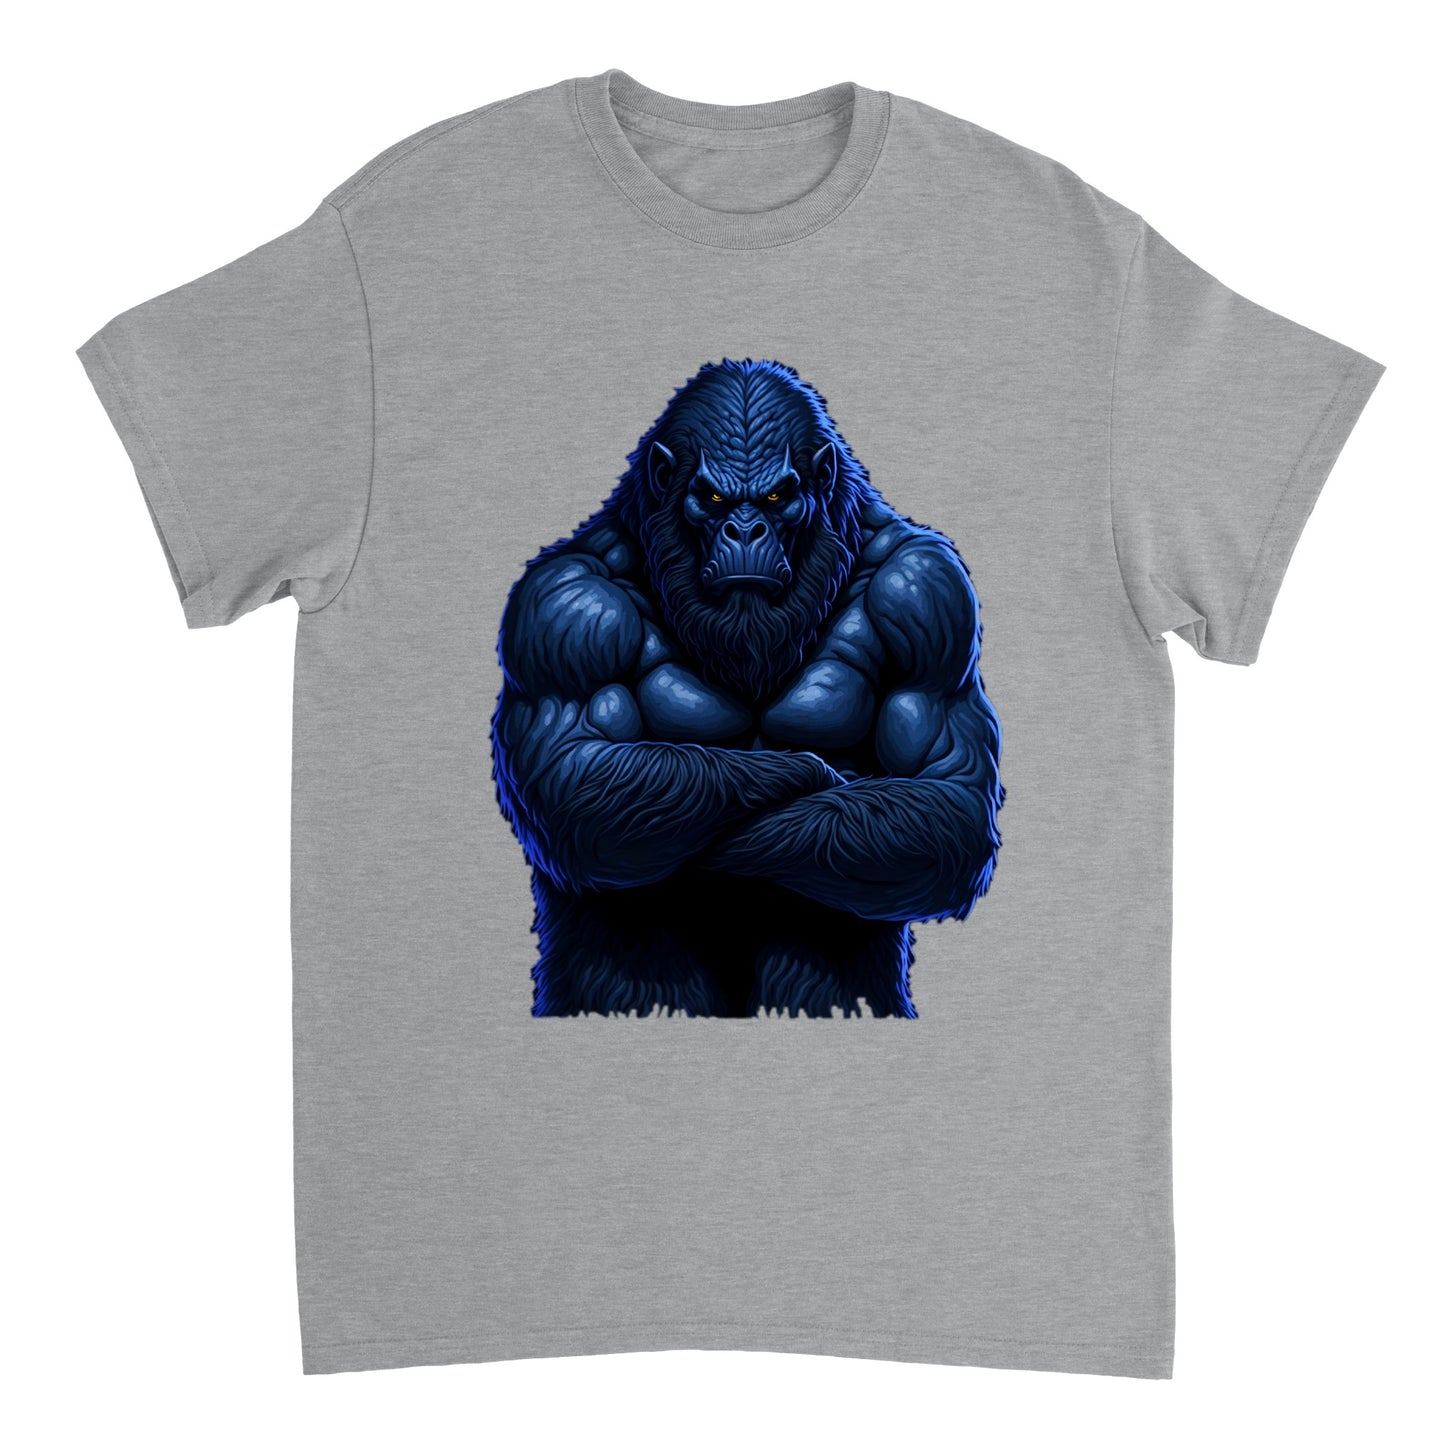 3D Bigfoot Art - Heavyweight Unisex Crewneck T-shirt 14